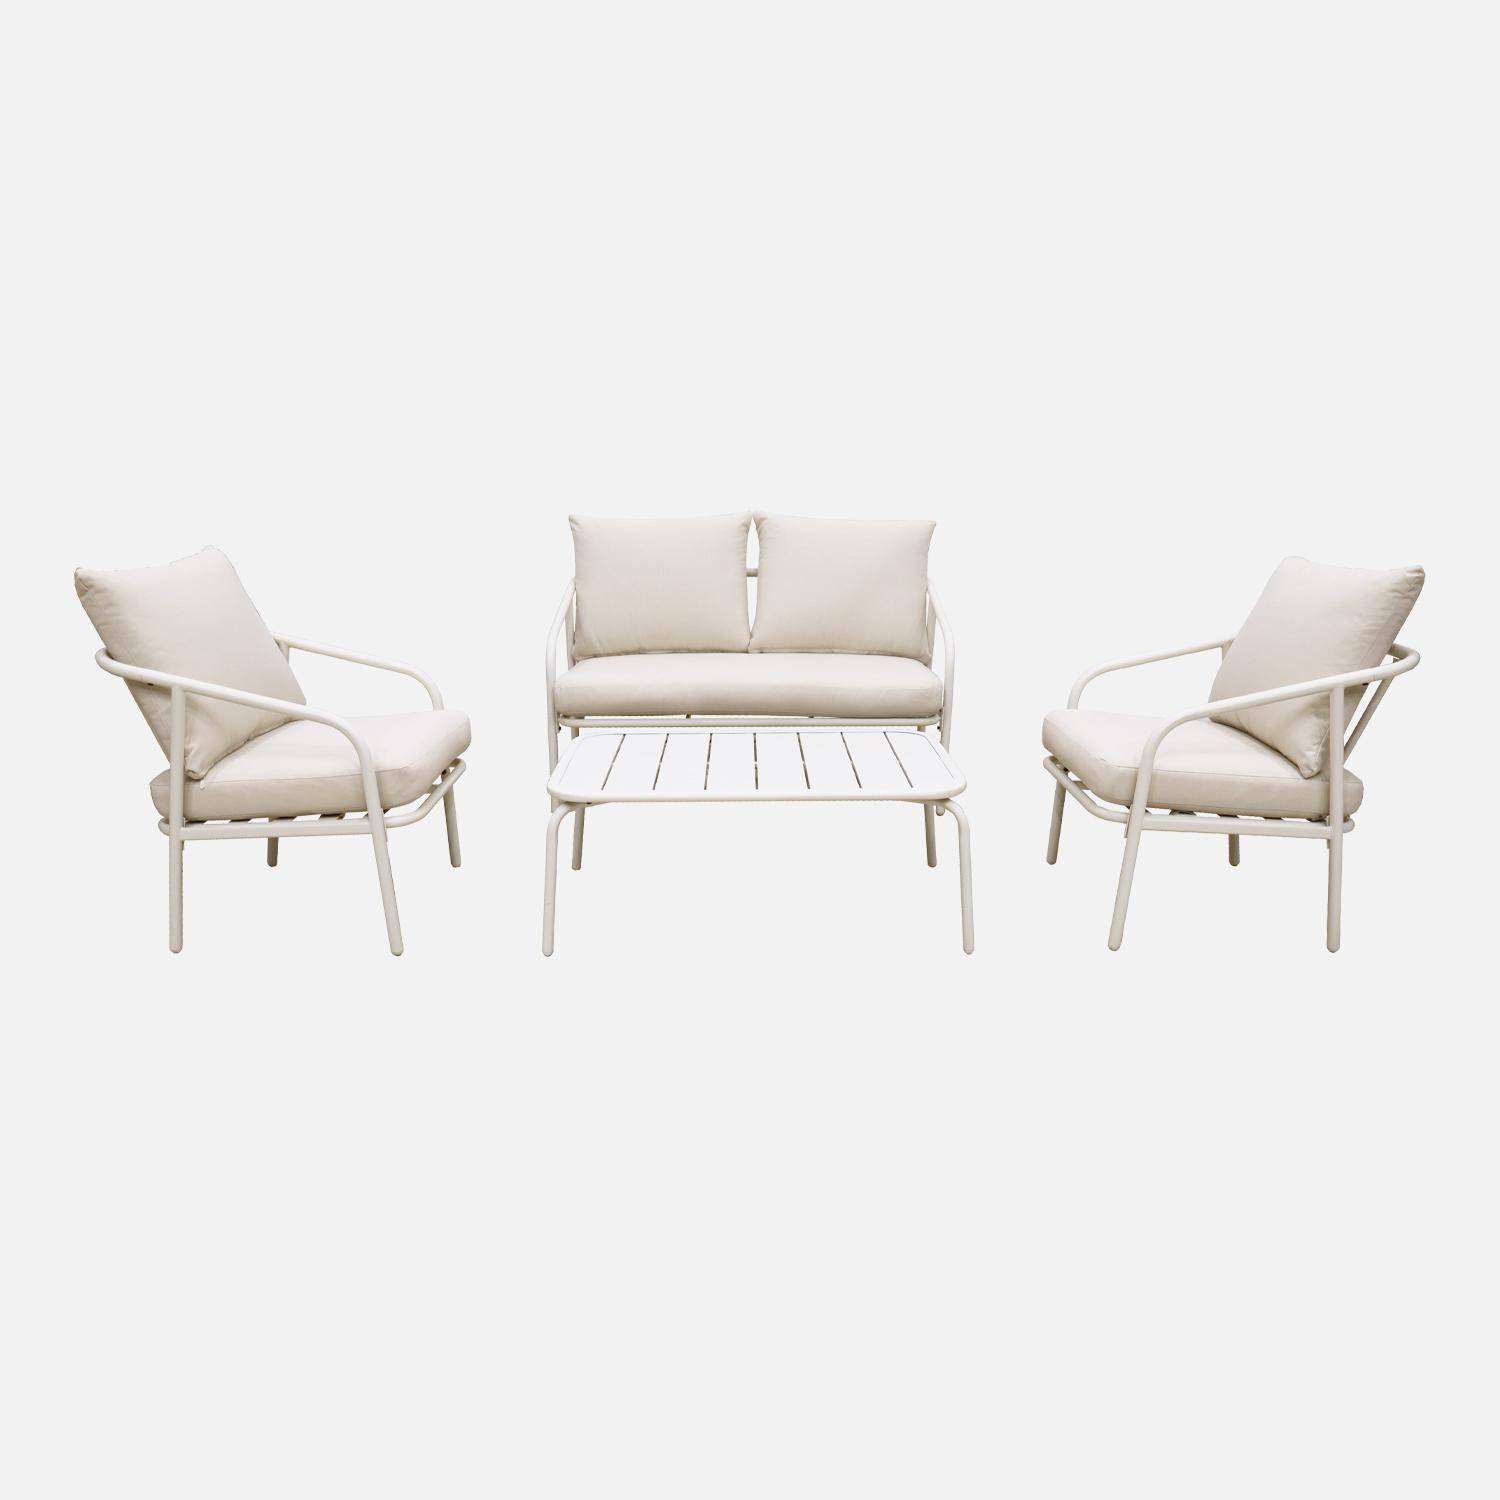 Salon de jardin en métal 4 places blanc, coussins beige, design épuré arrondi   Photo4